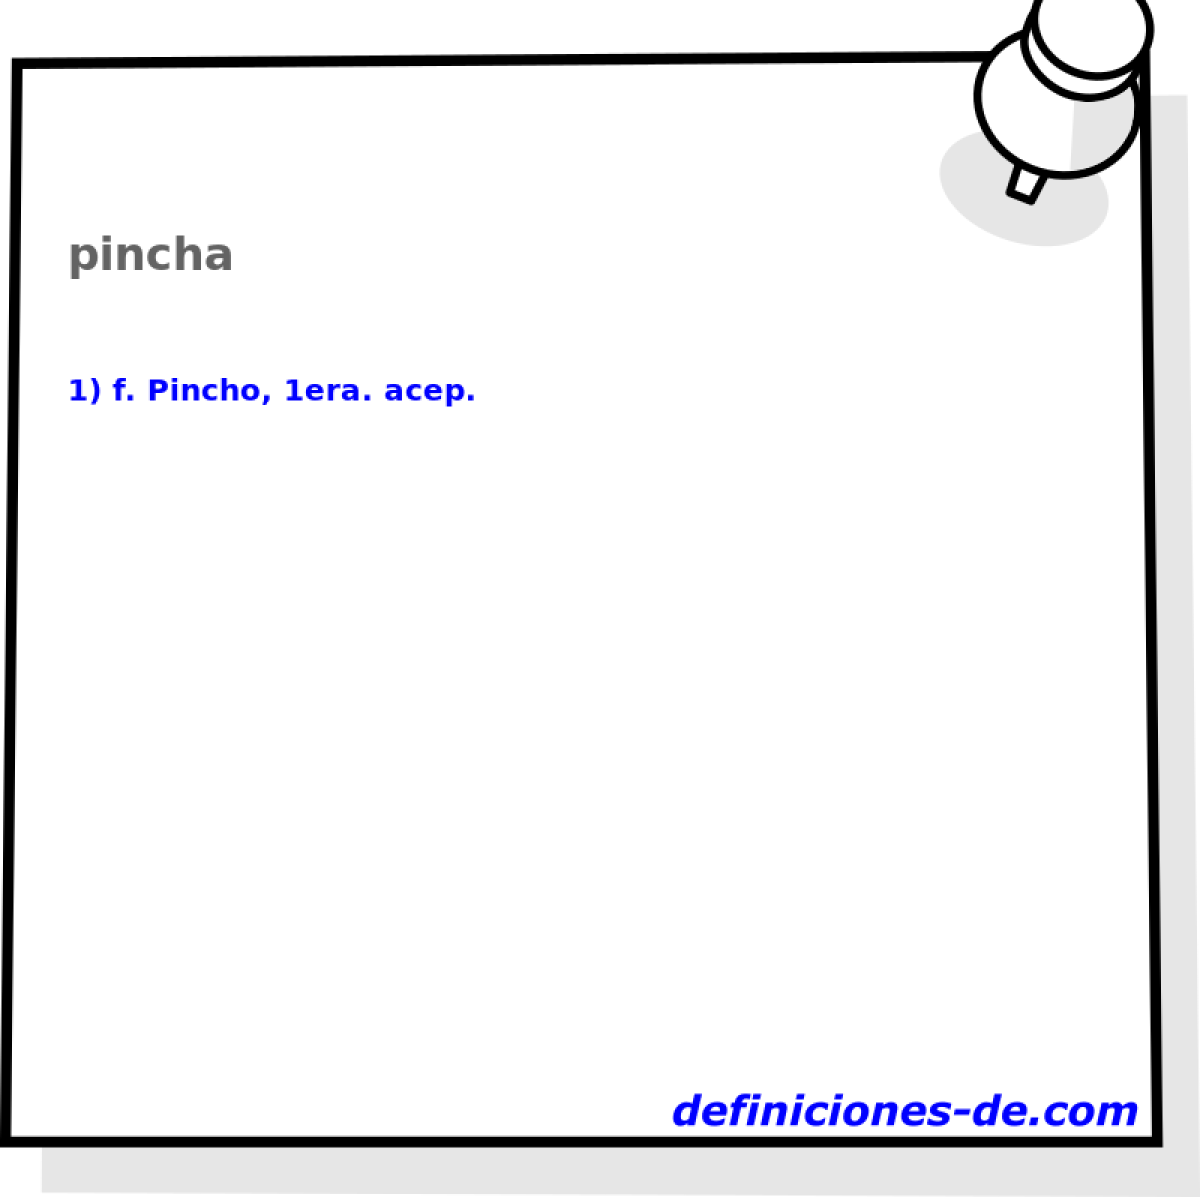 pincha 